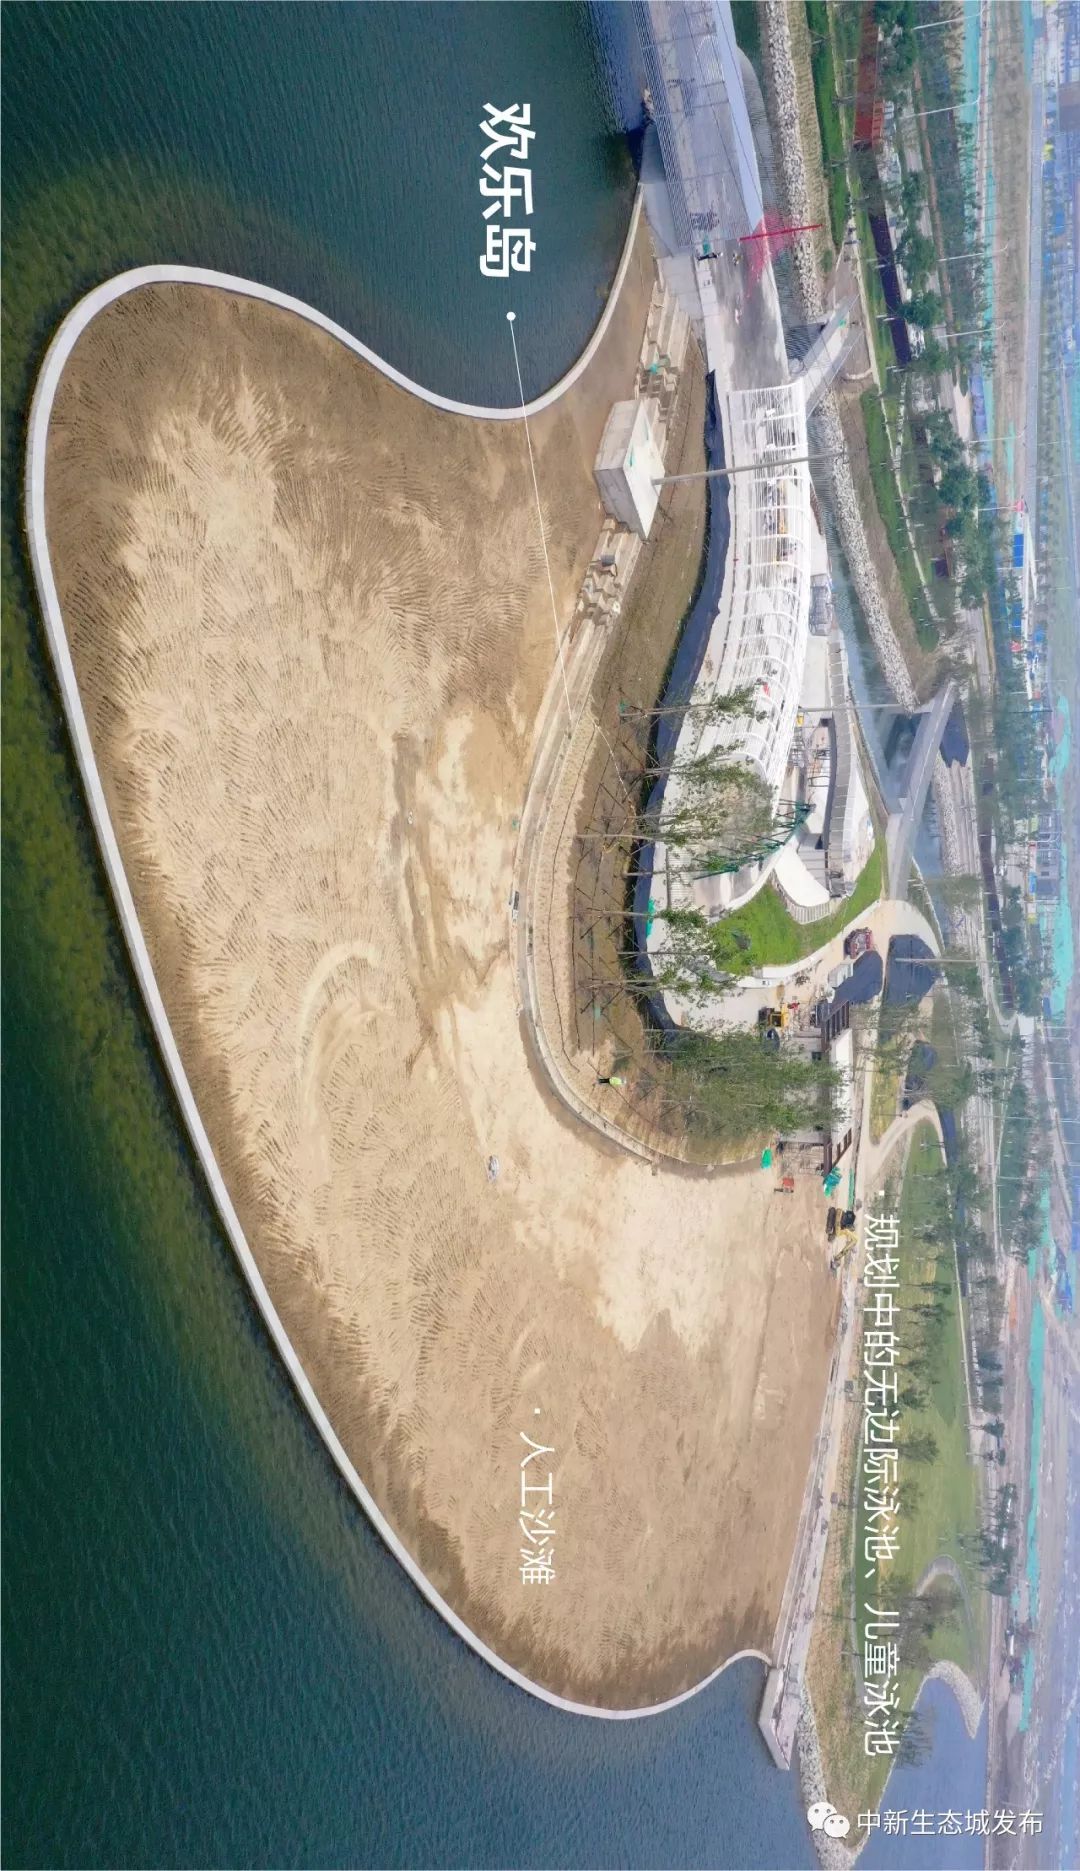 人工沙滩已成型提前看生态城南湾公园美景